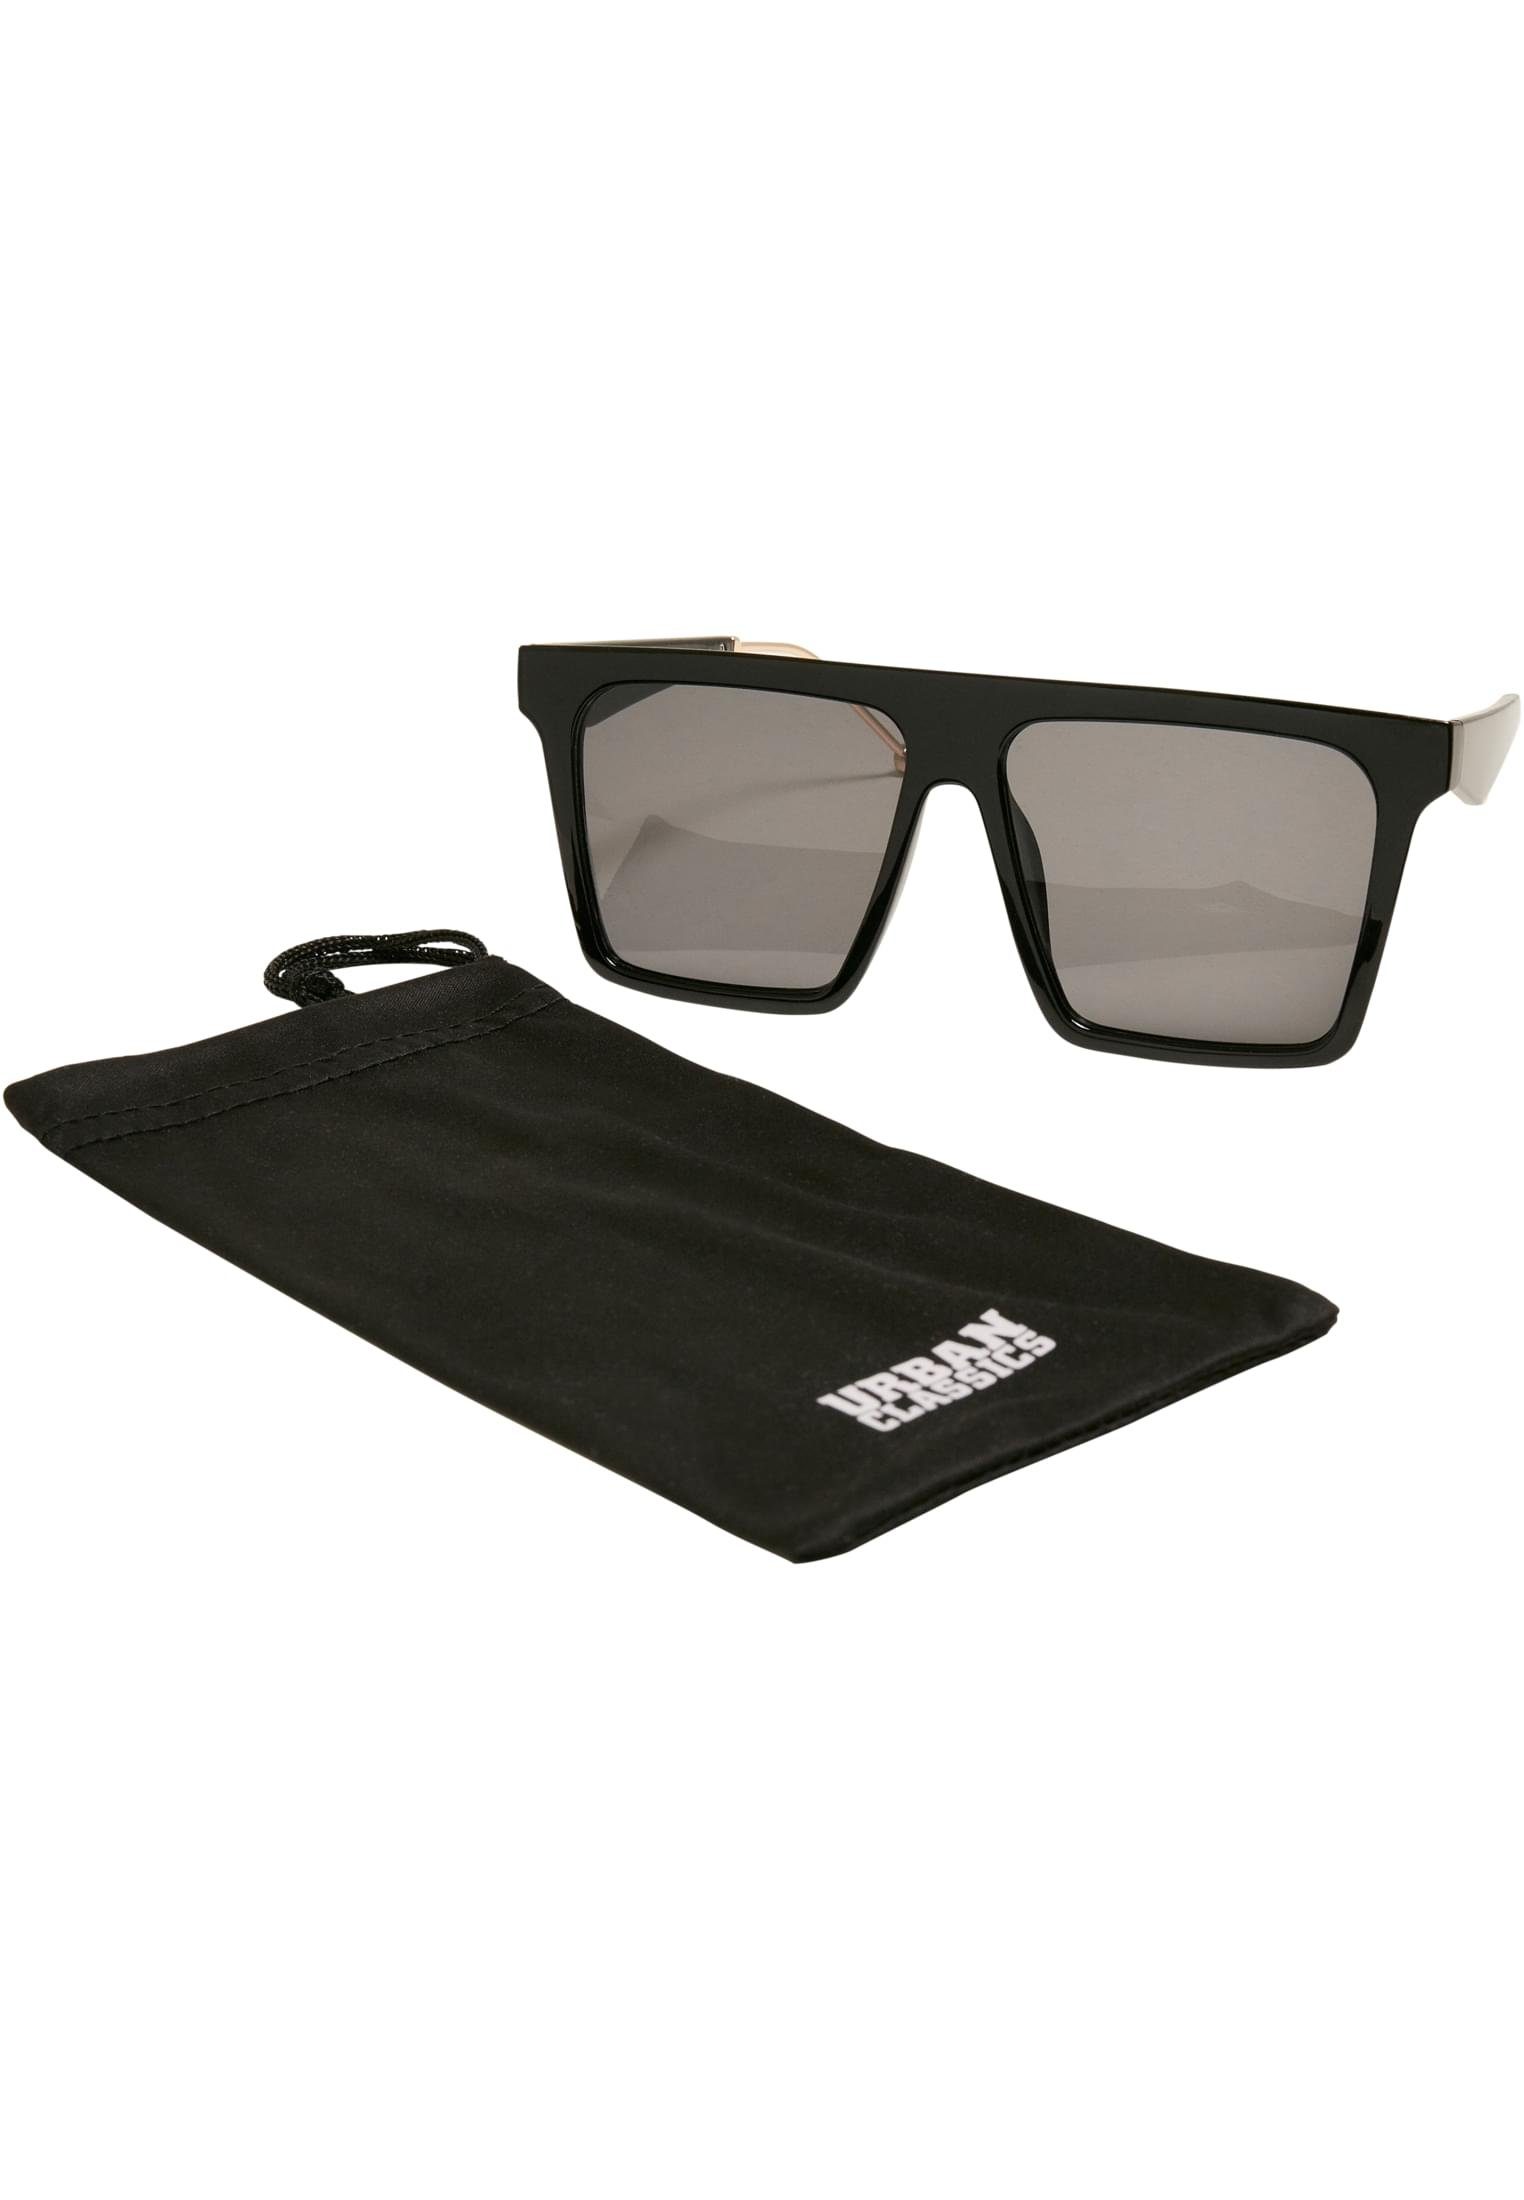 URBAN CLASSICS Sonnenbrille Unisex Sunglasses Iowa